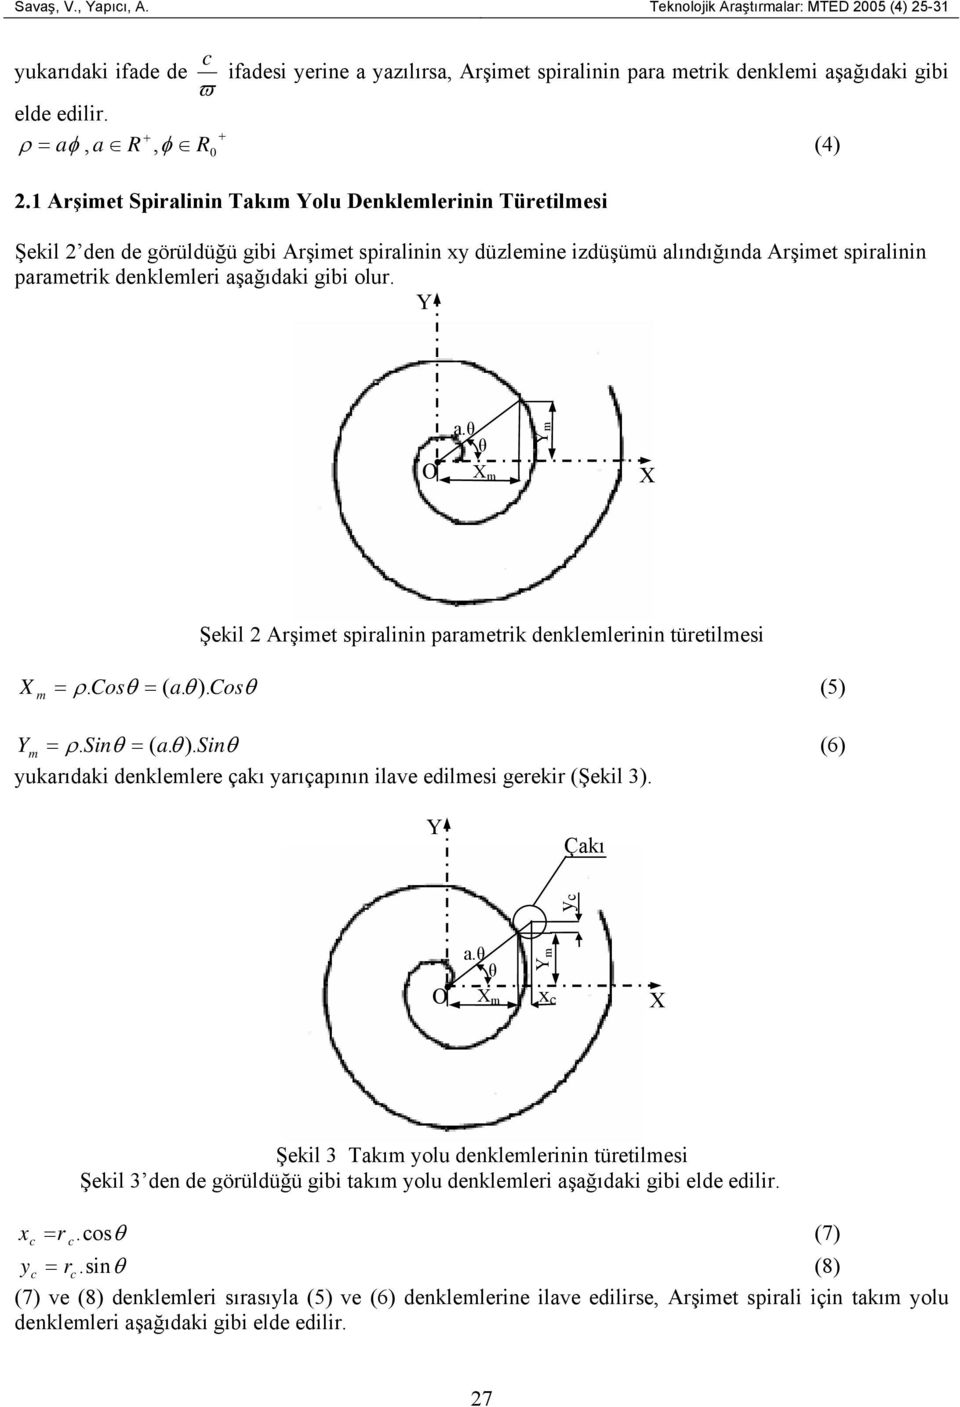 1 Arşimet Spiralinin Takım Yolu Denklemlerinin Türetilmesi Şekil 2 den de görüldüğü gibi Arşimet spiralinin xy düzlemine izdüşümü alındığında Arşimet spiralinin parametrik denklemleri aşağıdaki gibi